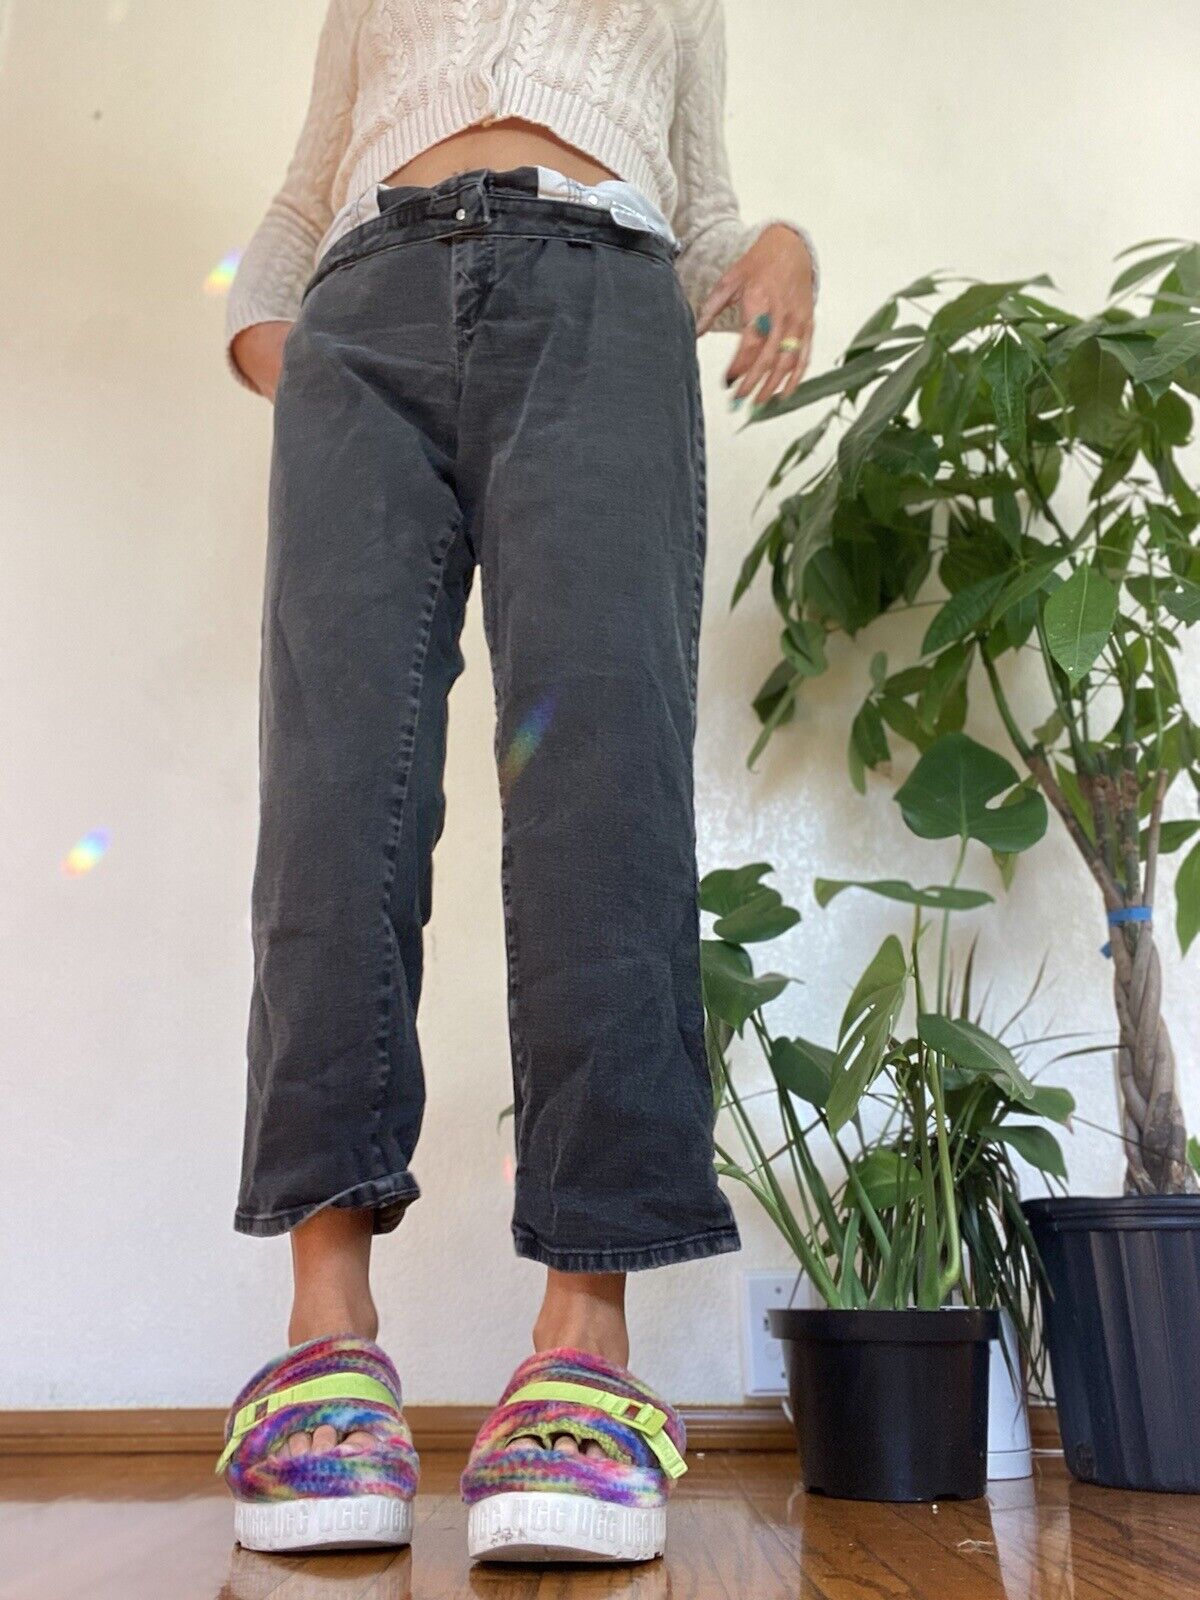 Black Straight Leg Jeans - Lee - 14 Short # 2203